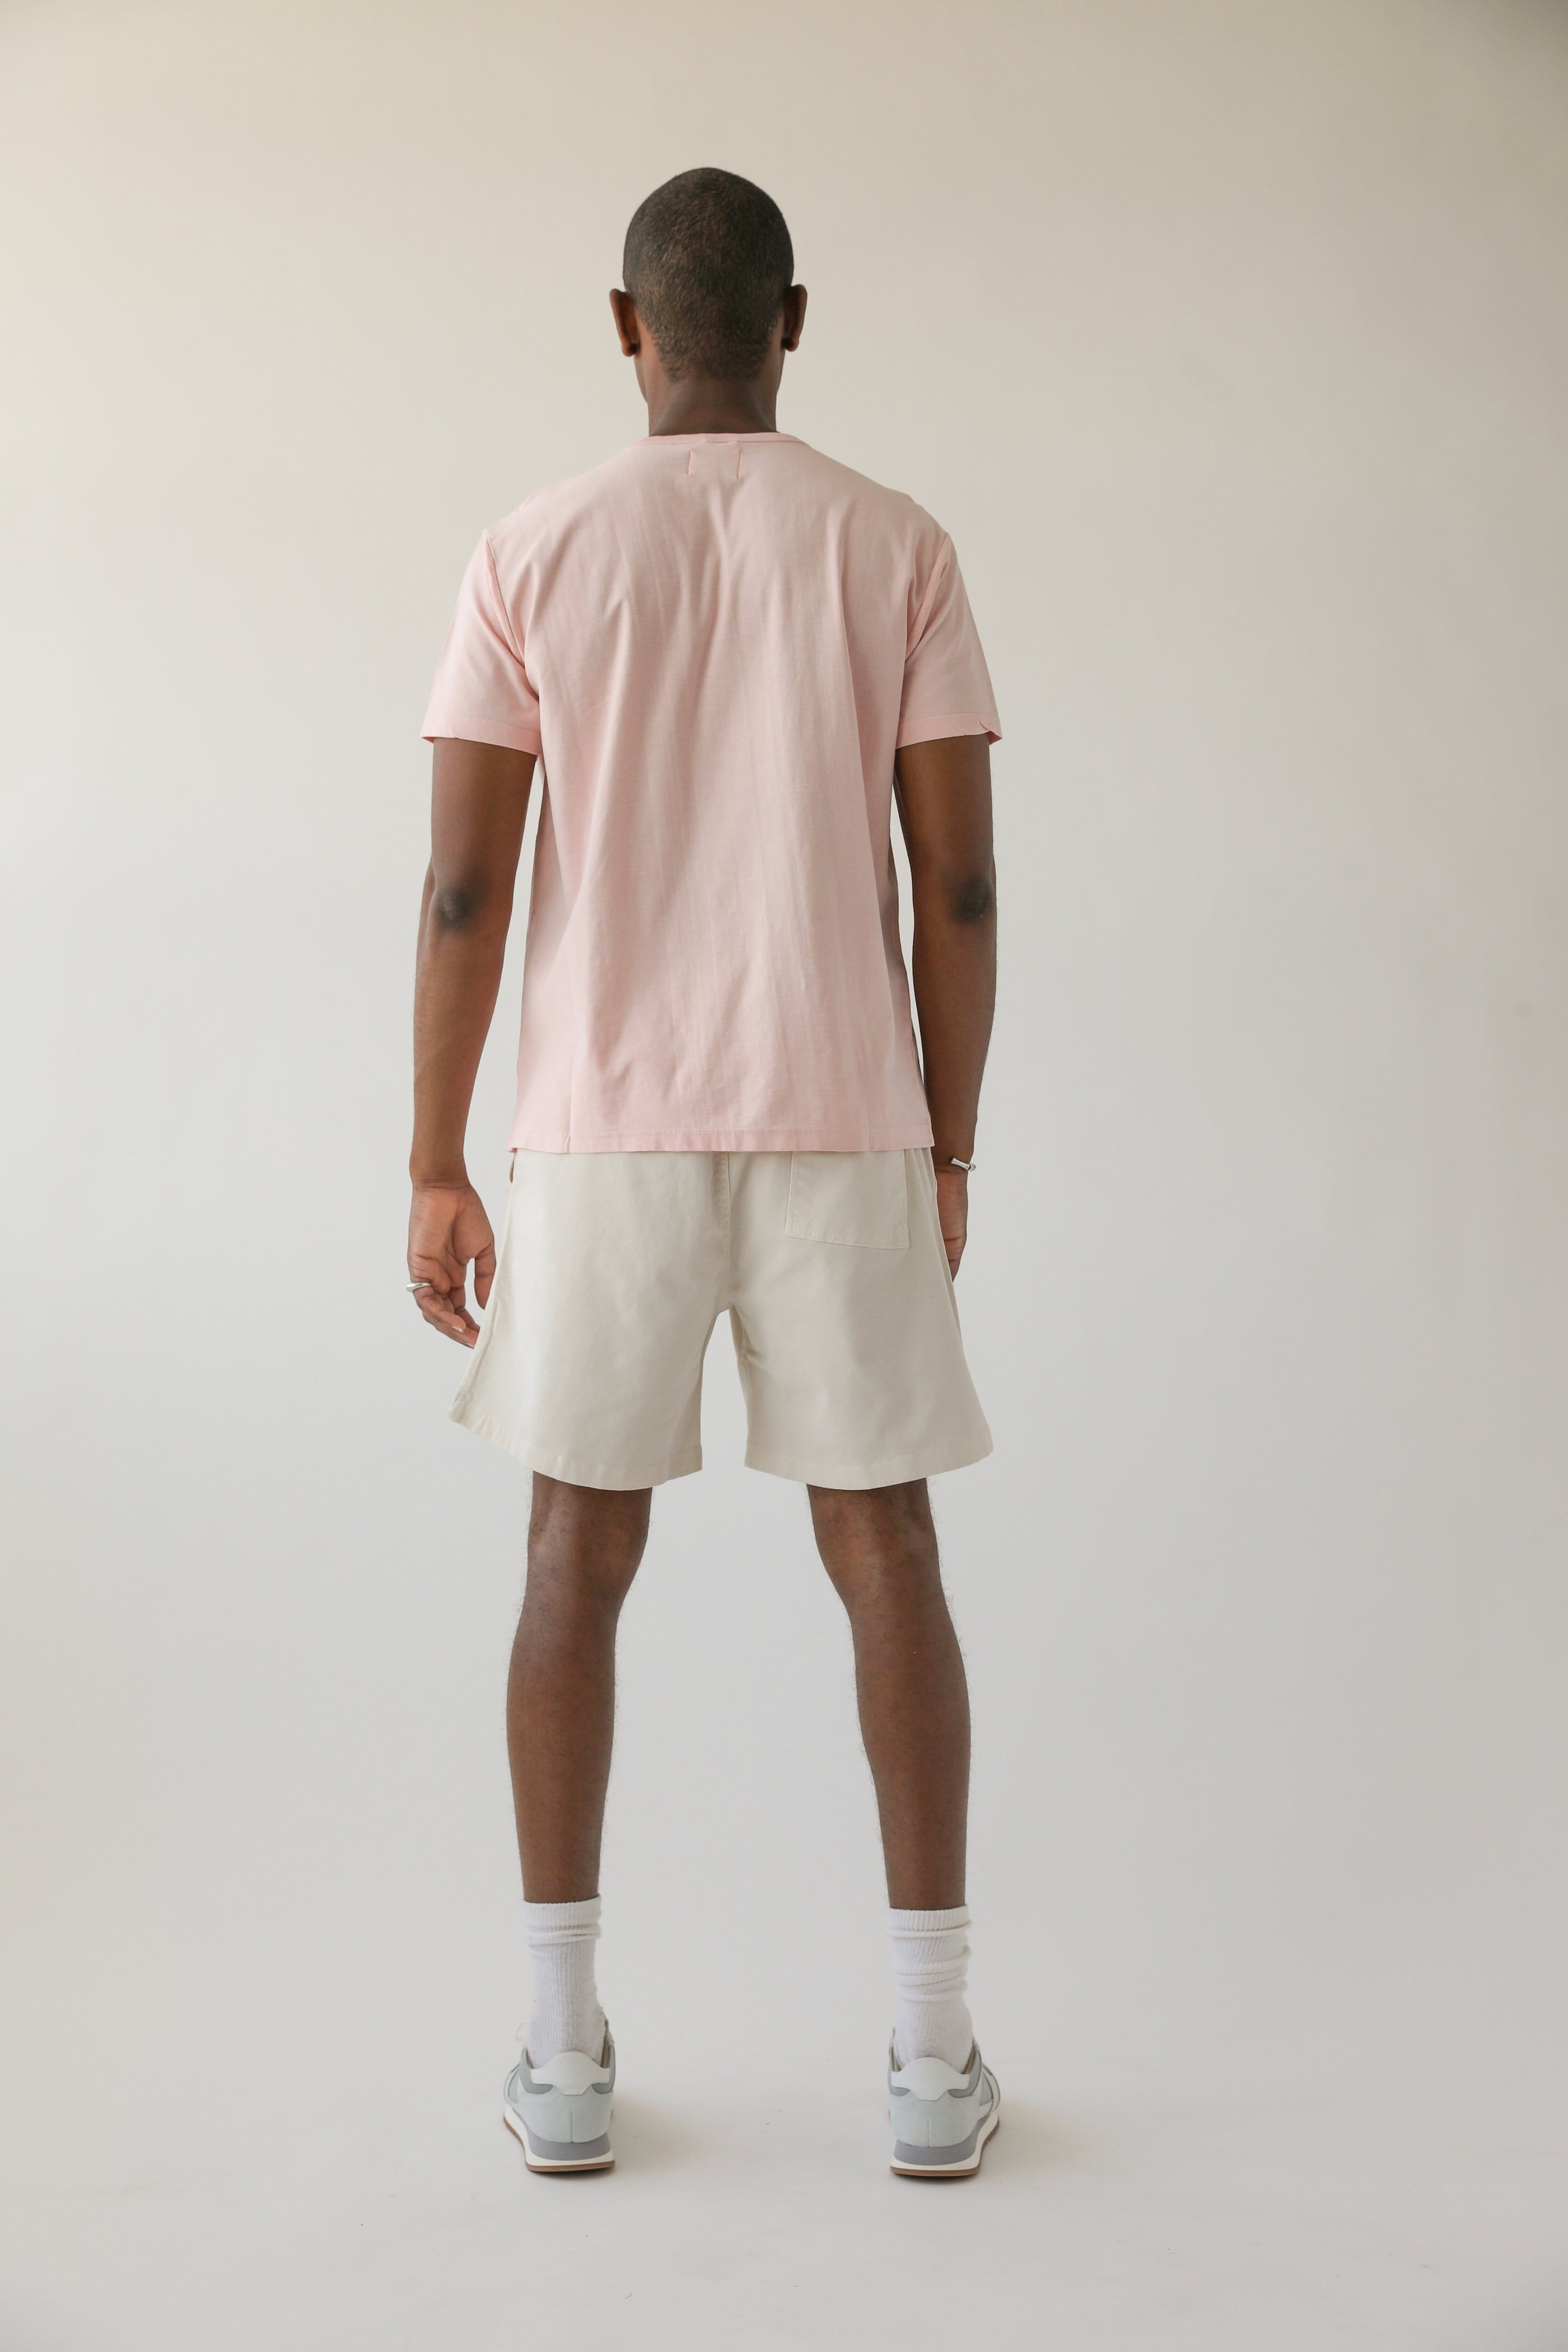 SSB Lotus - Pink T-Shirt